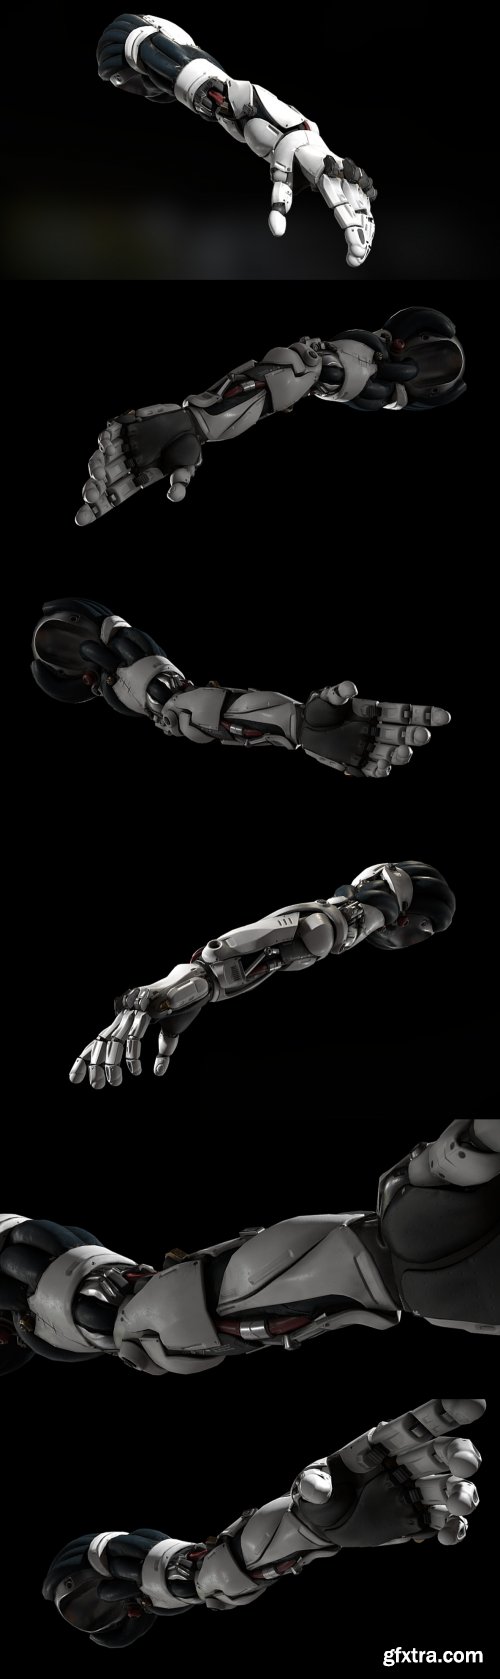 Robotic Arm pbr 3d